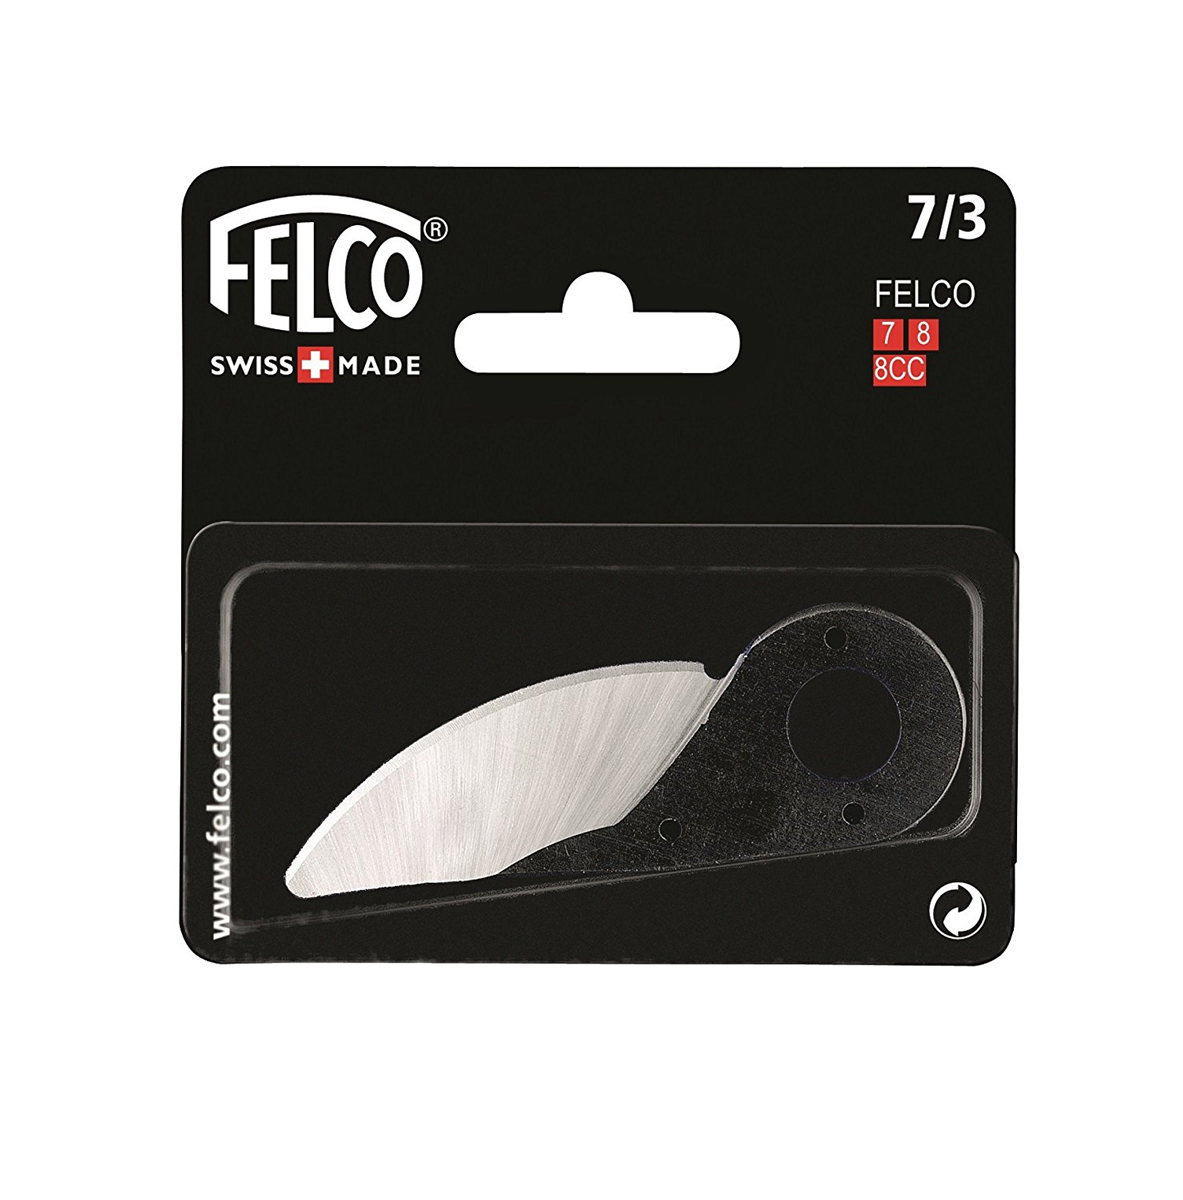 7-3 Cutting Blade for F 7 8 Felco